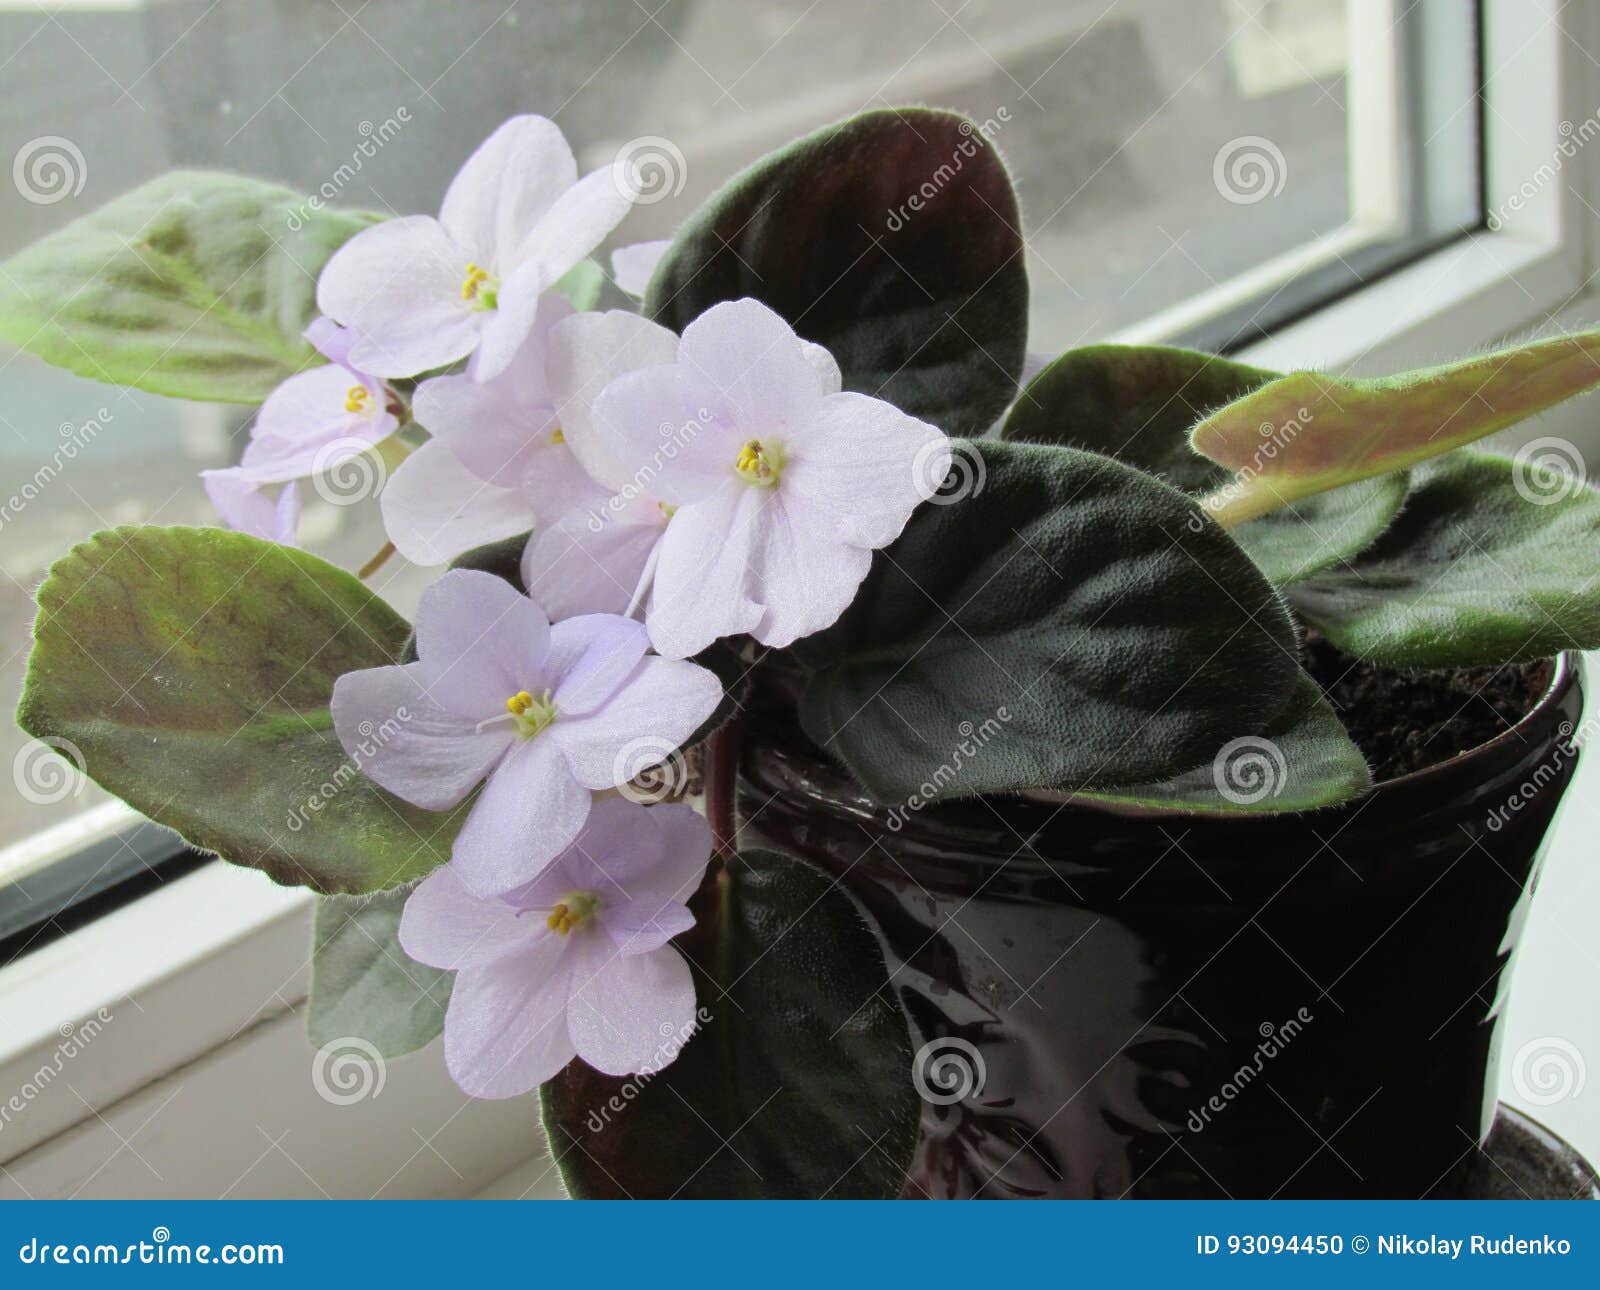 Violeta blanca en maceta foto de archivo. Imagen de flores - 93094450